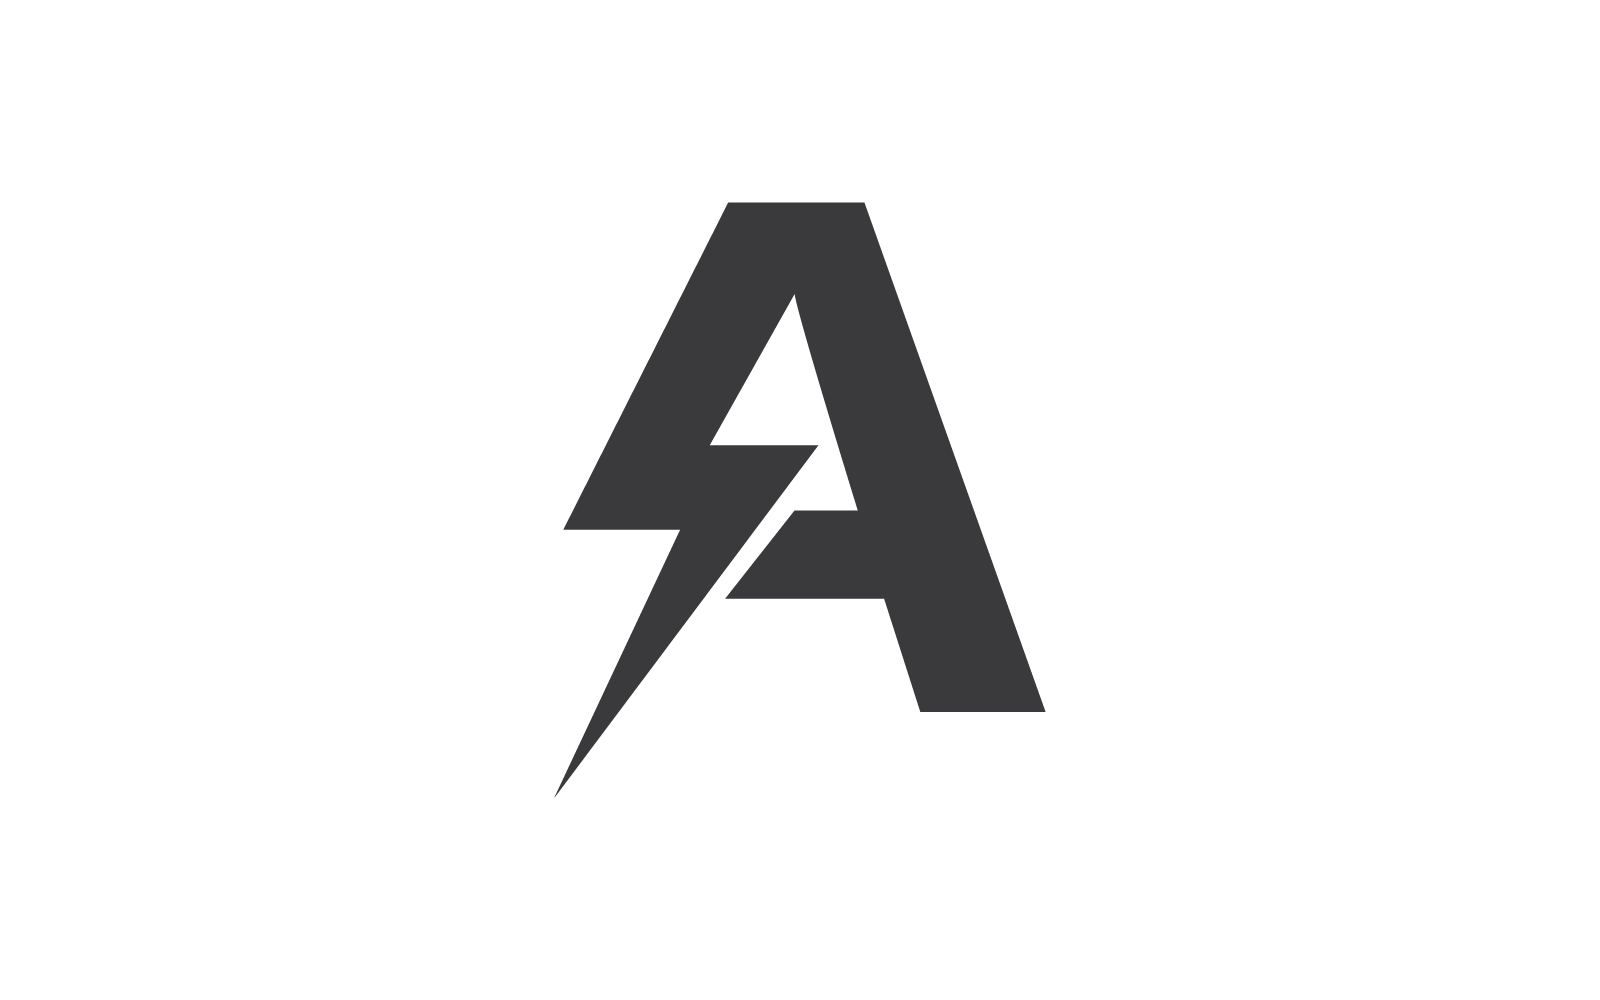 A letter initial Power lightning logo vector design